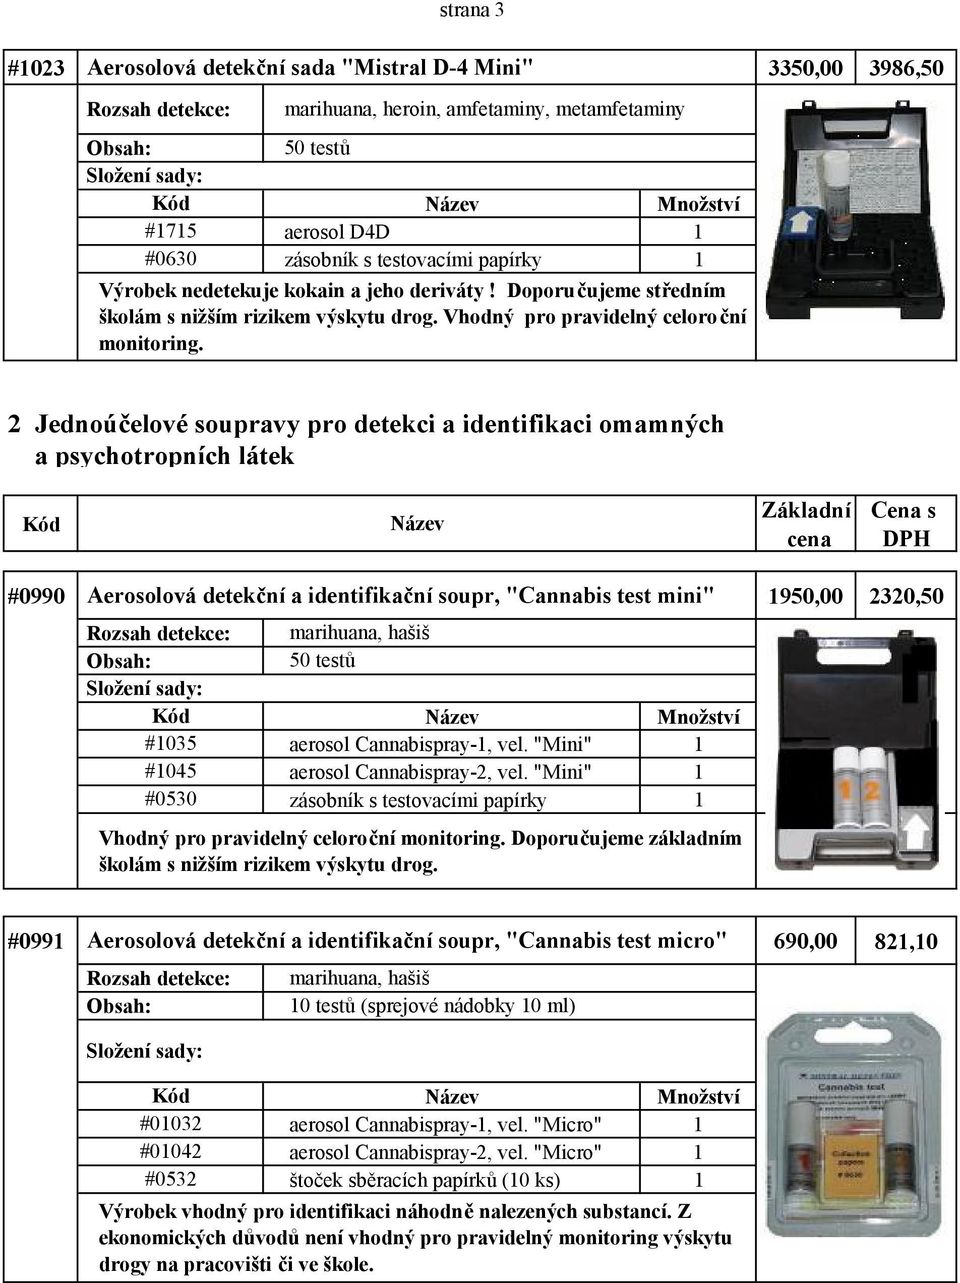 2 Jednoúčelové soupravy pro detekci a identifikaci omamných a psychotropních látek Základní cena Cena s DPH #0990 Aerosolová detekční a identifikační soupr, "Cannabis test mini" 1950,00 2320,50 #1035